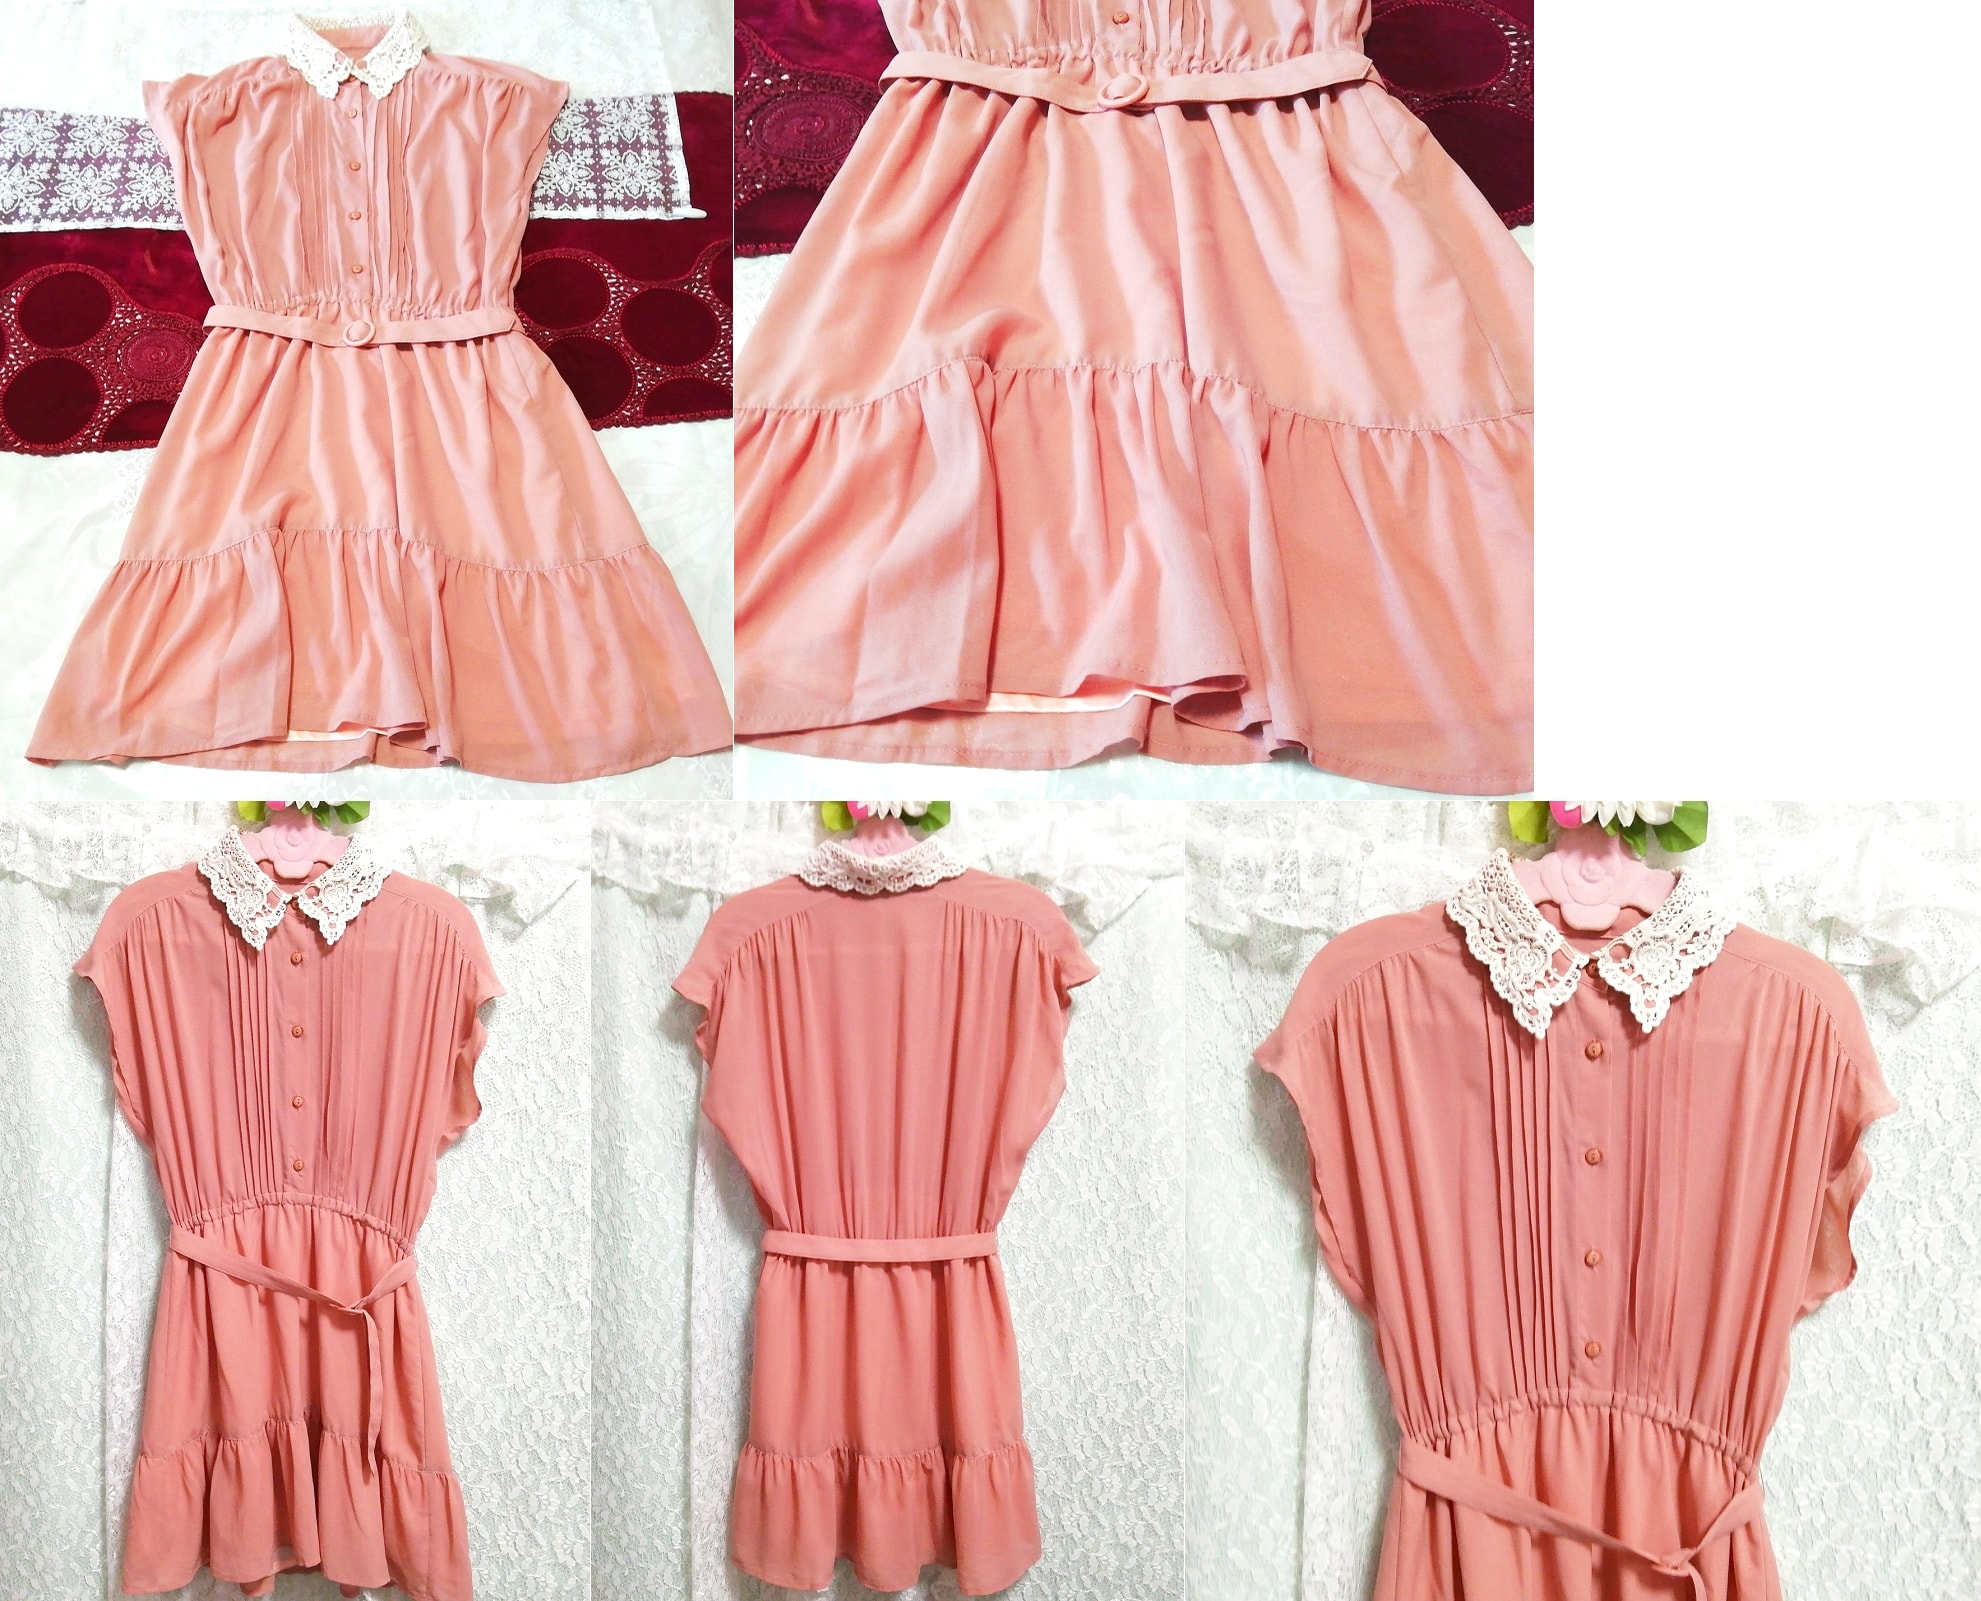 Pink beige white lace collar chiffon shirt tunic negligee nightgown dress, tunic, sleeveless, sleeveless, m size